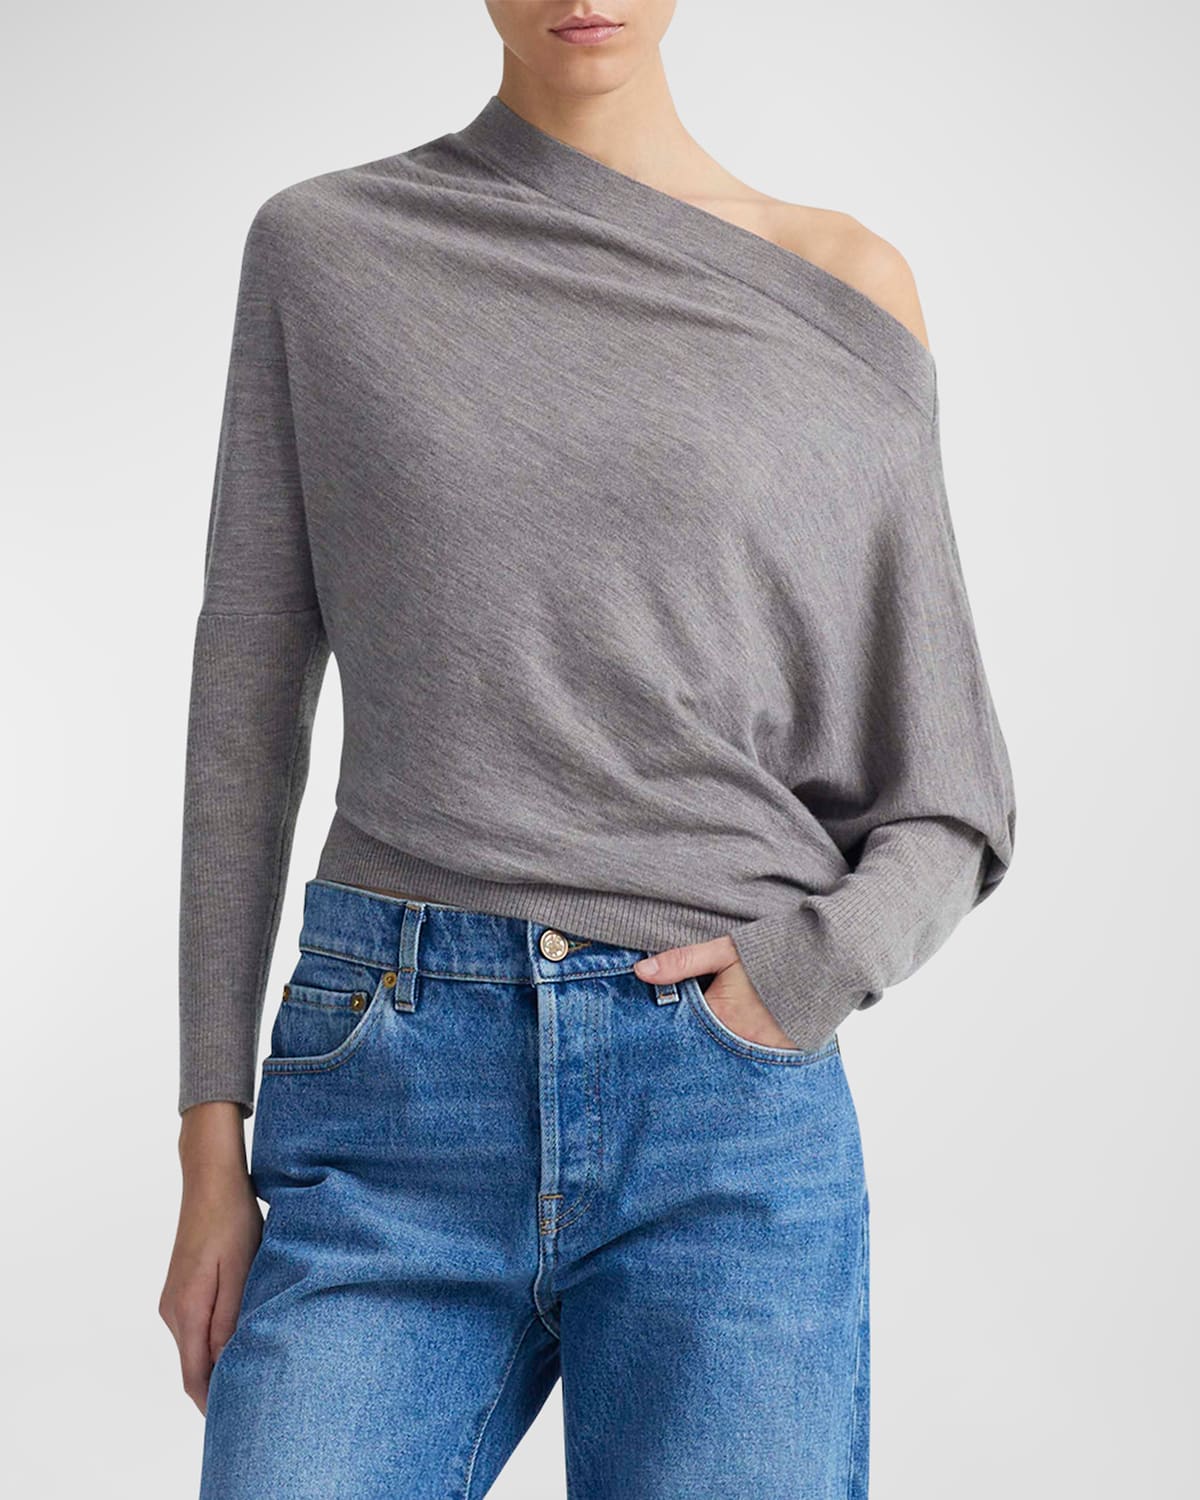 Grainge Cashmere Off-Shoulder Sweater